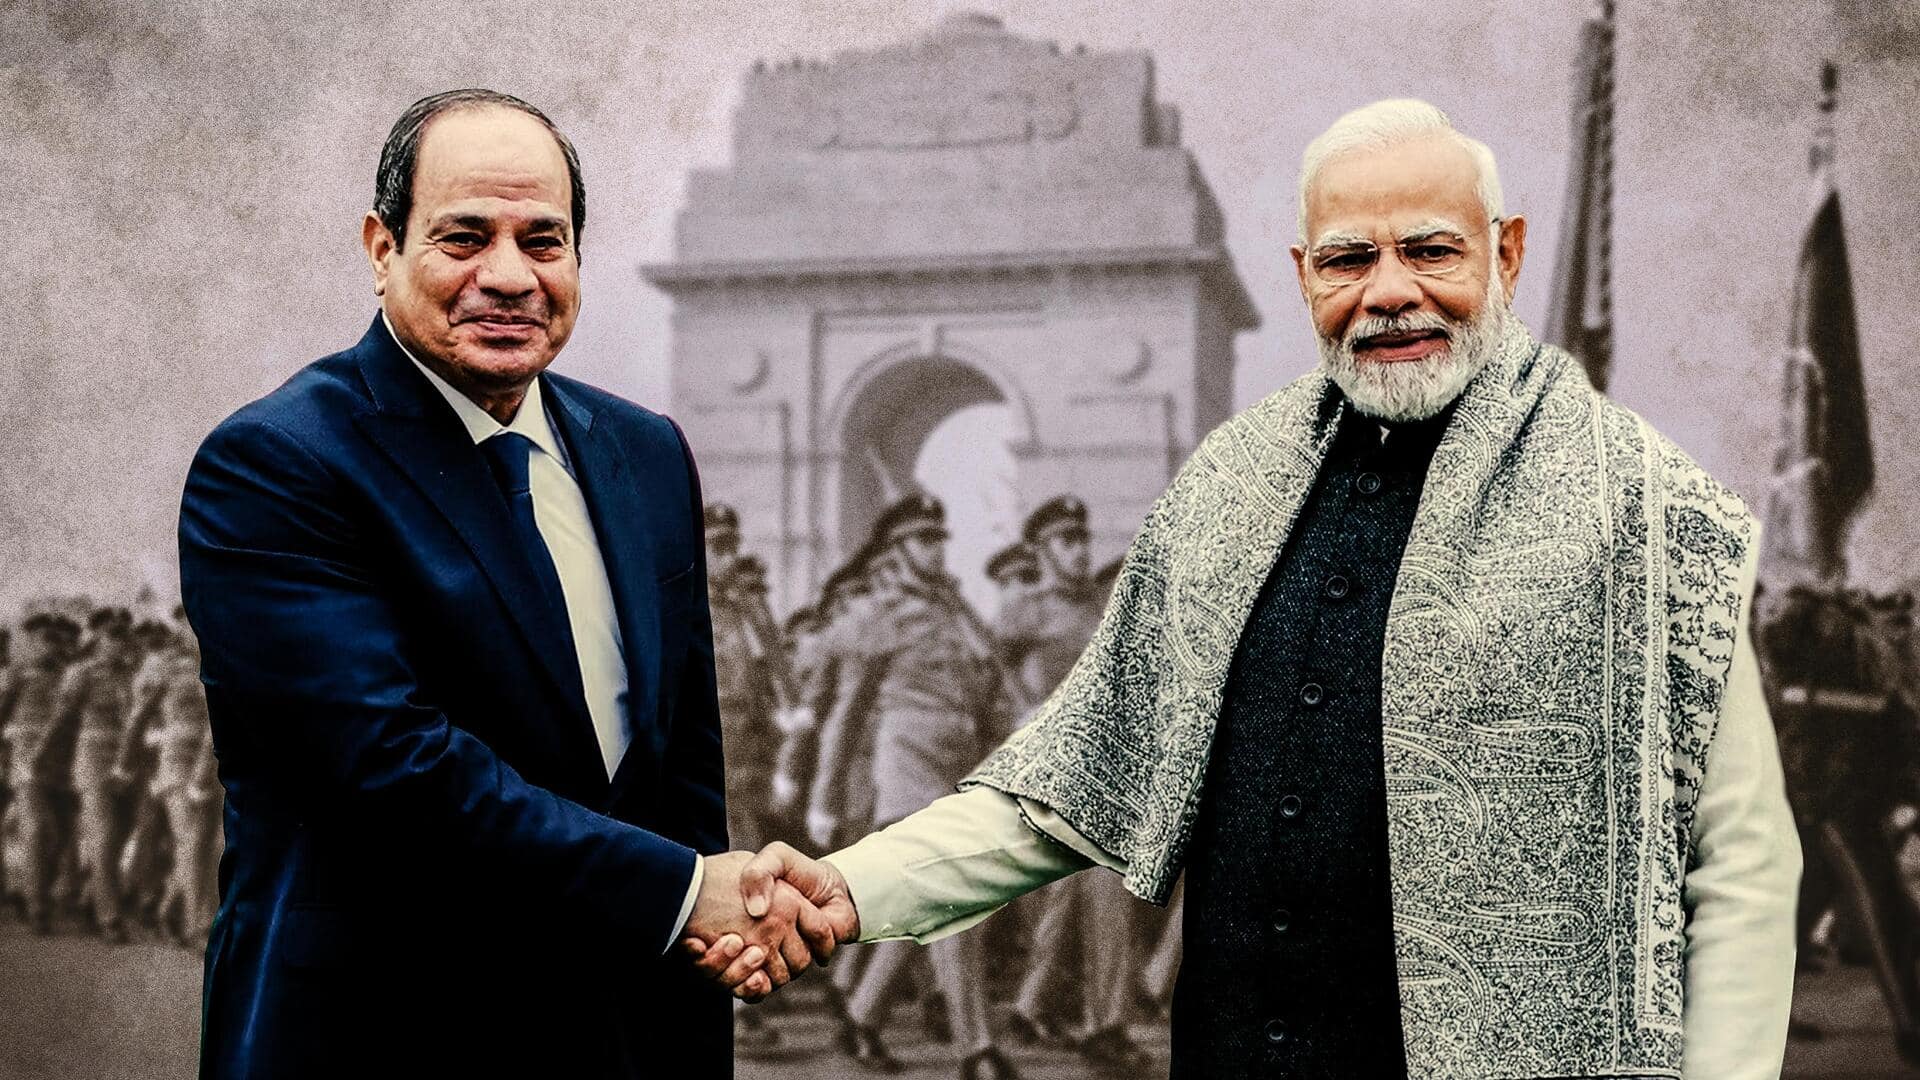 प्रधानमंत्री मोदी की मिस्र यात्रा के मायने और कैसे दोनों देशों के संबंध मजबूत हो रहे?  